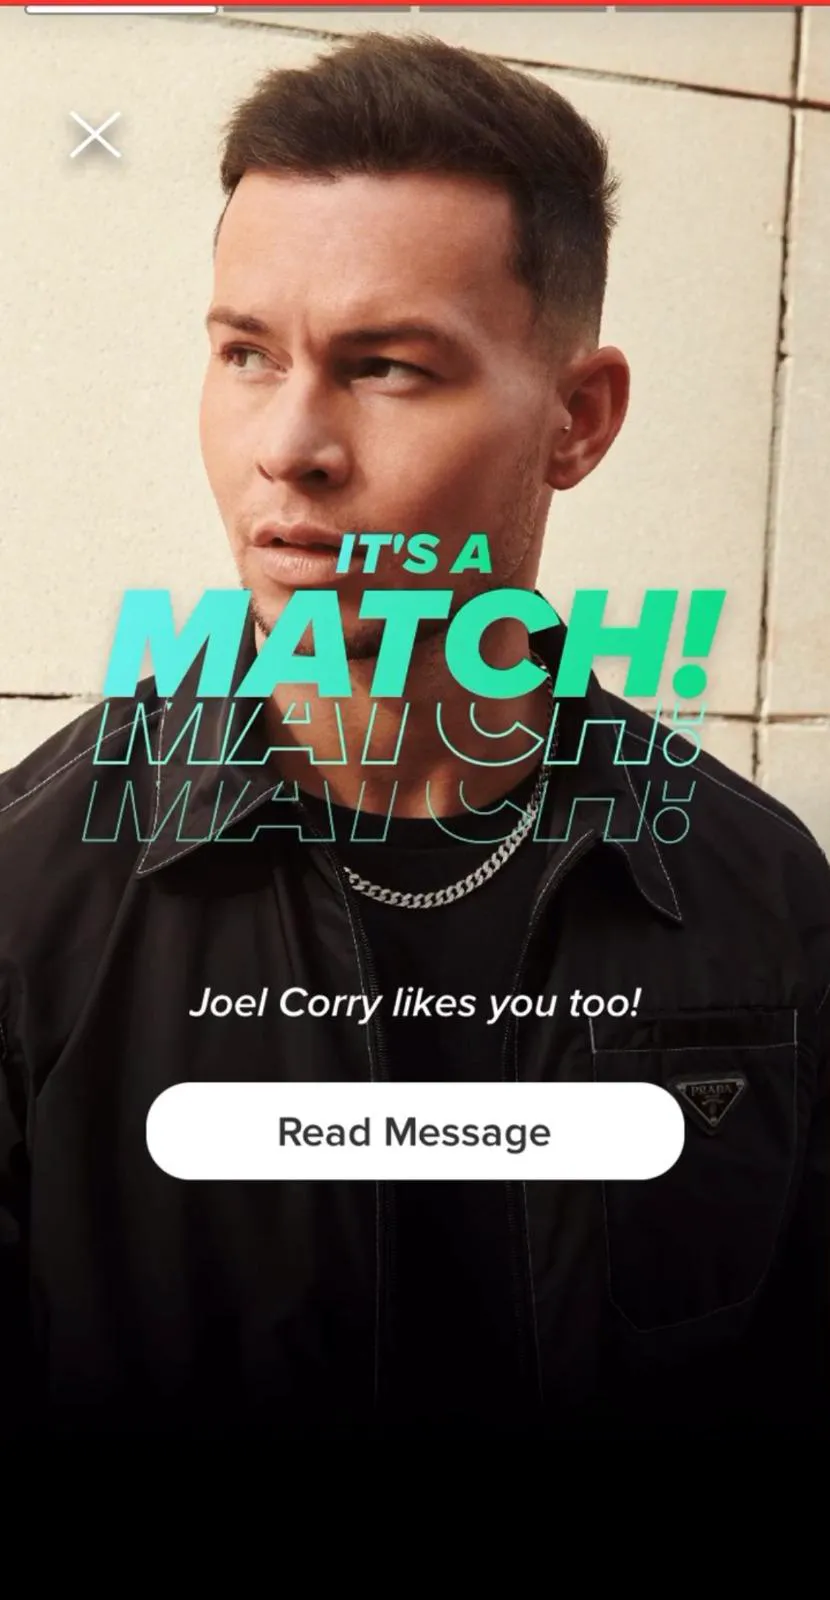 Tinder cho phép người dùng tương hợp với ngôi sao nhạc dance mới nổi Joel Corry